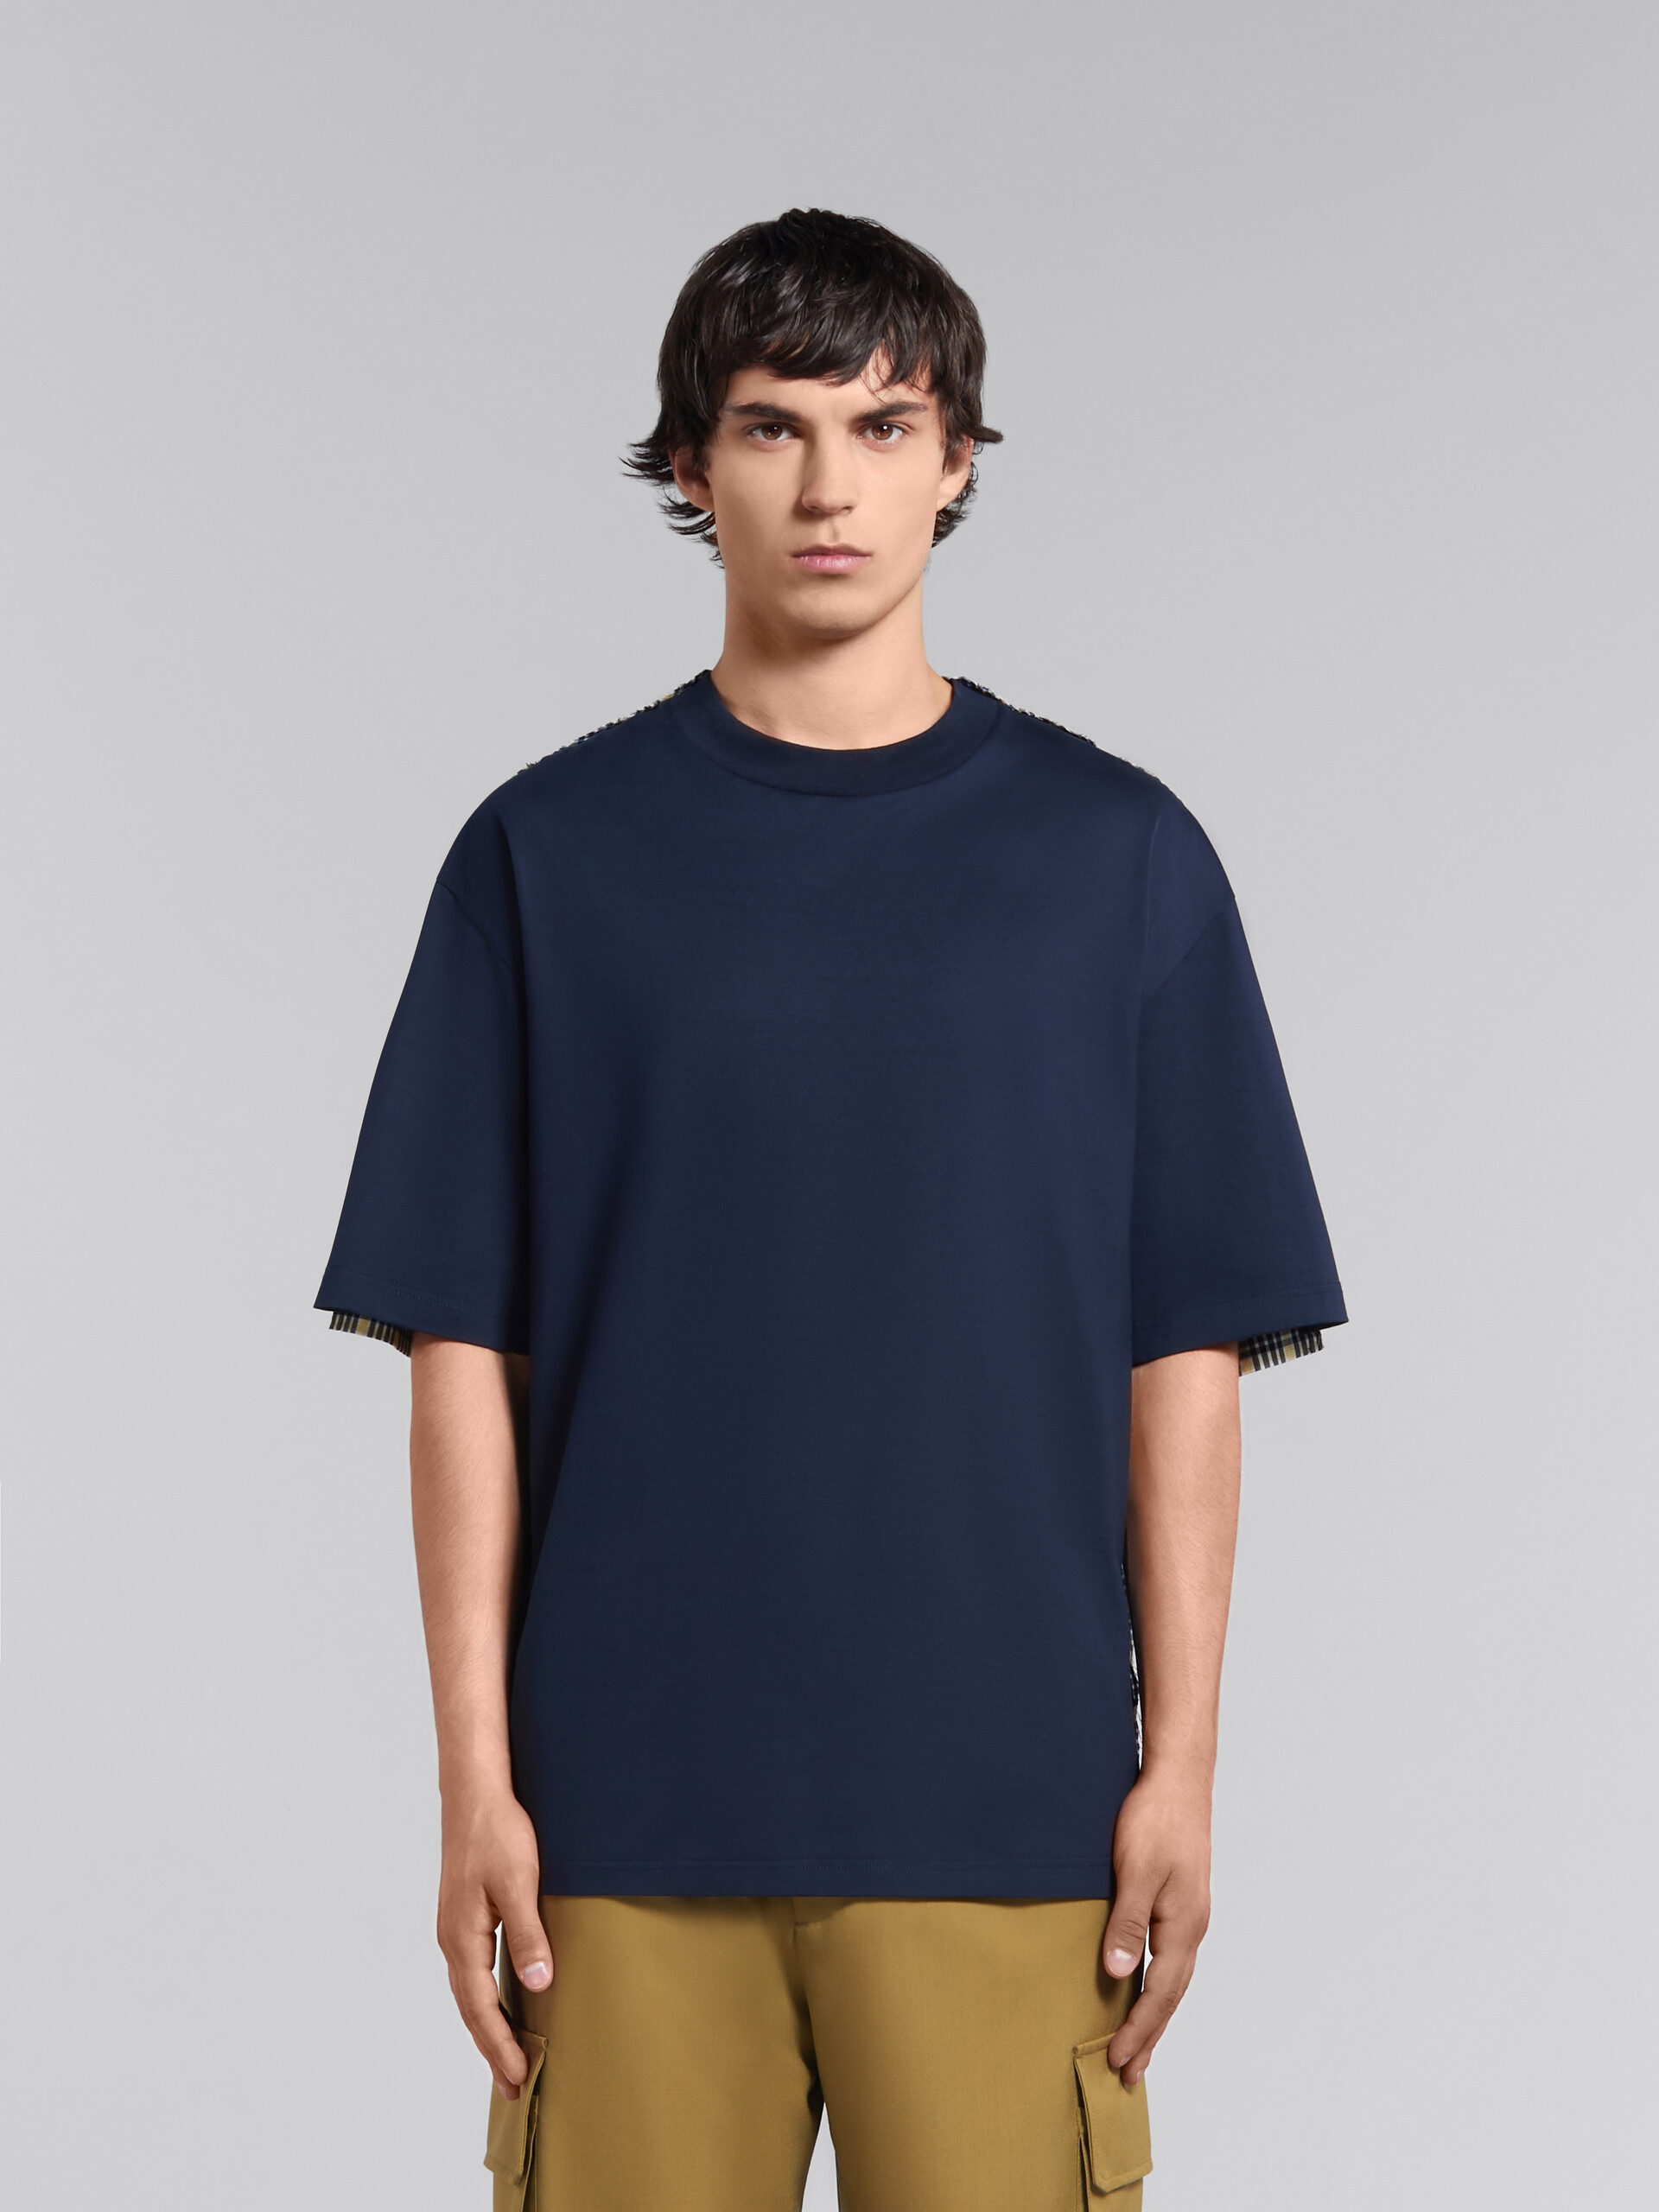 T-shirt en coton biologique bleu profond avec dos à carreaux - T-shirts - Image 2